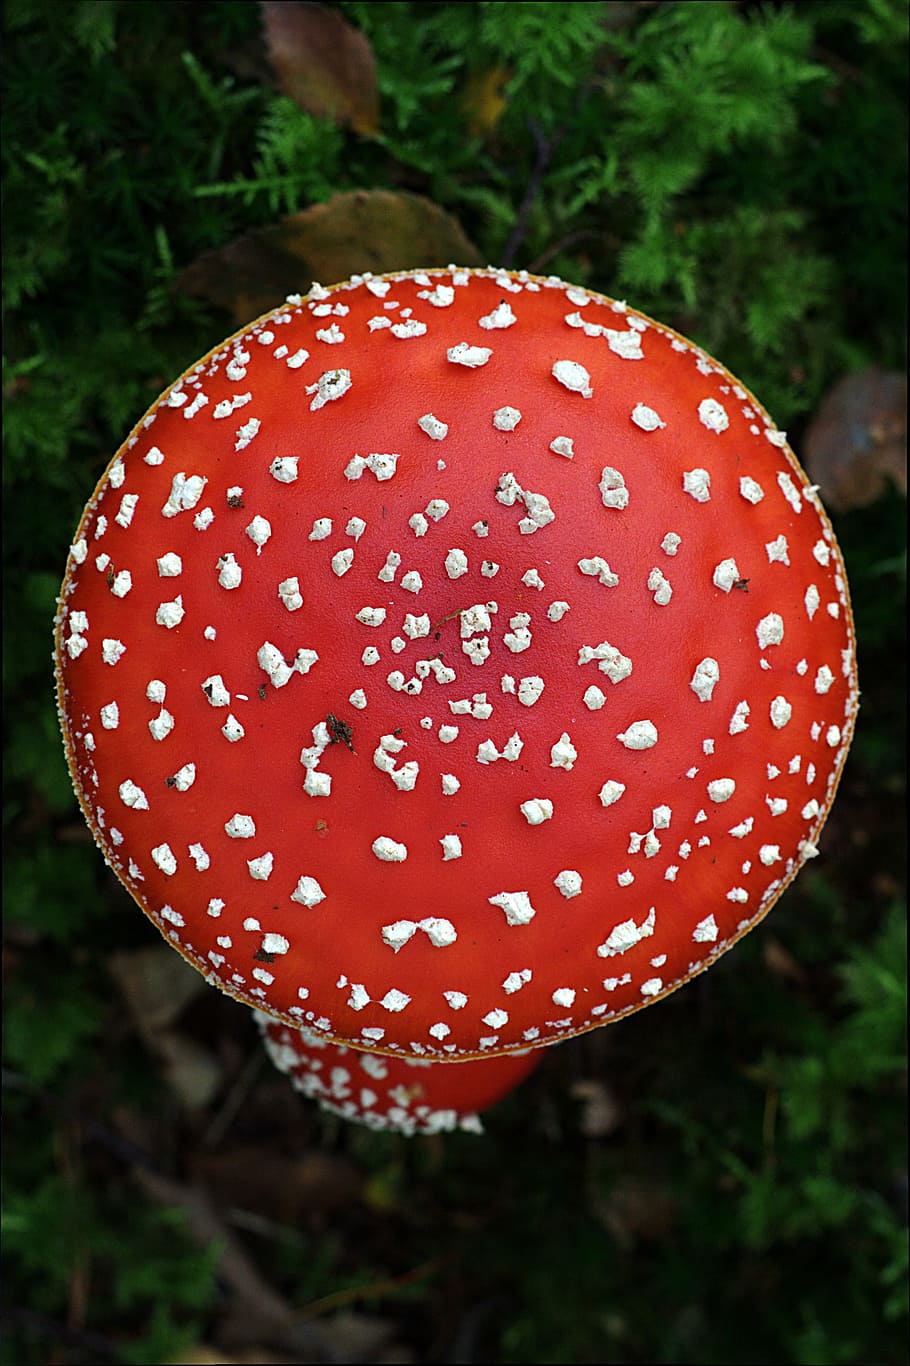 terbang agaric, jamur, musim gugur, amanita muscaria, merah, terbang jamur agaric, terlihat, close-up, pertumbuhan, tidak ada orang